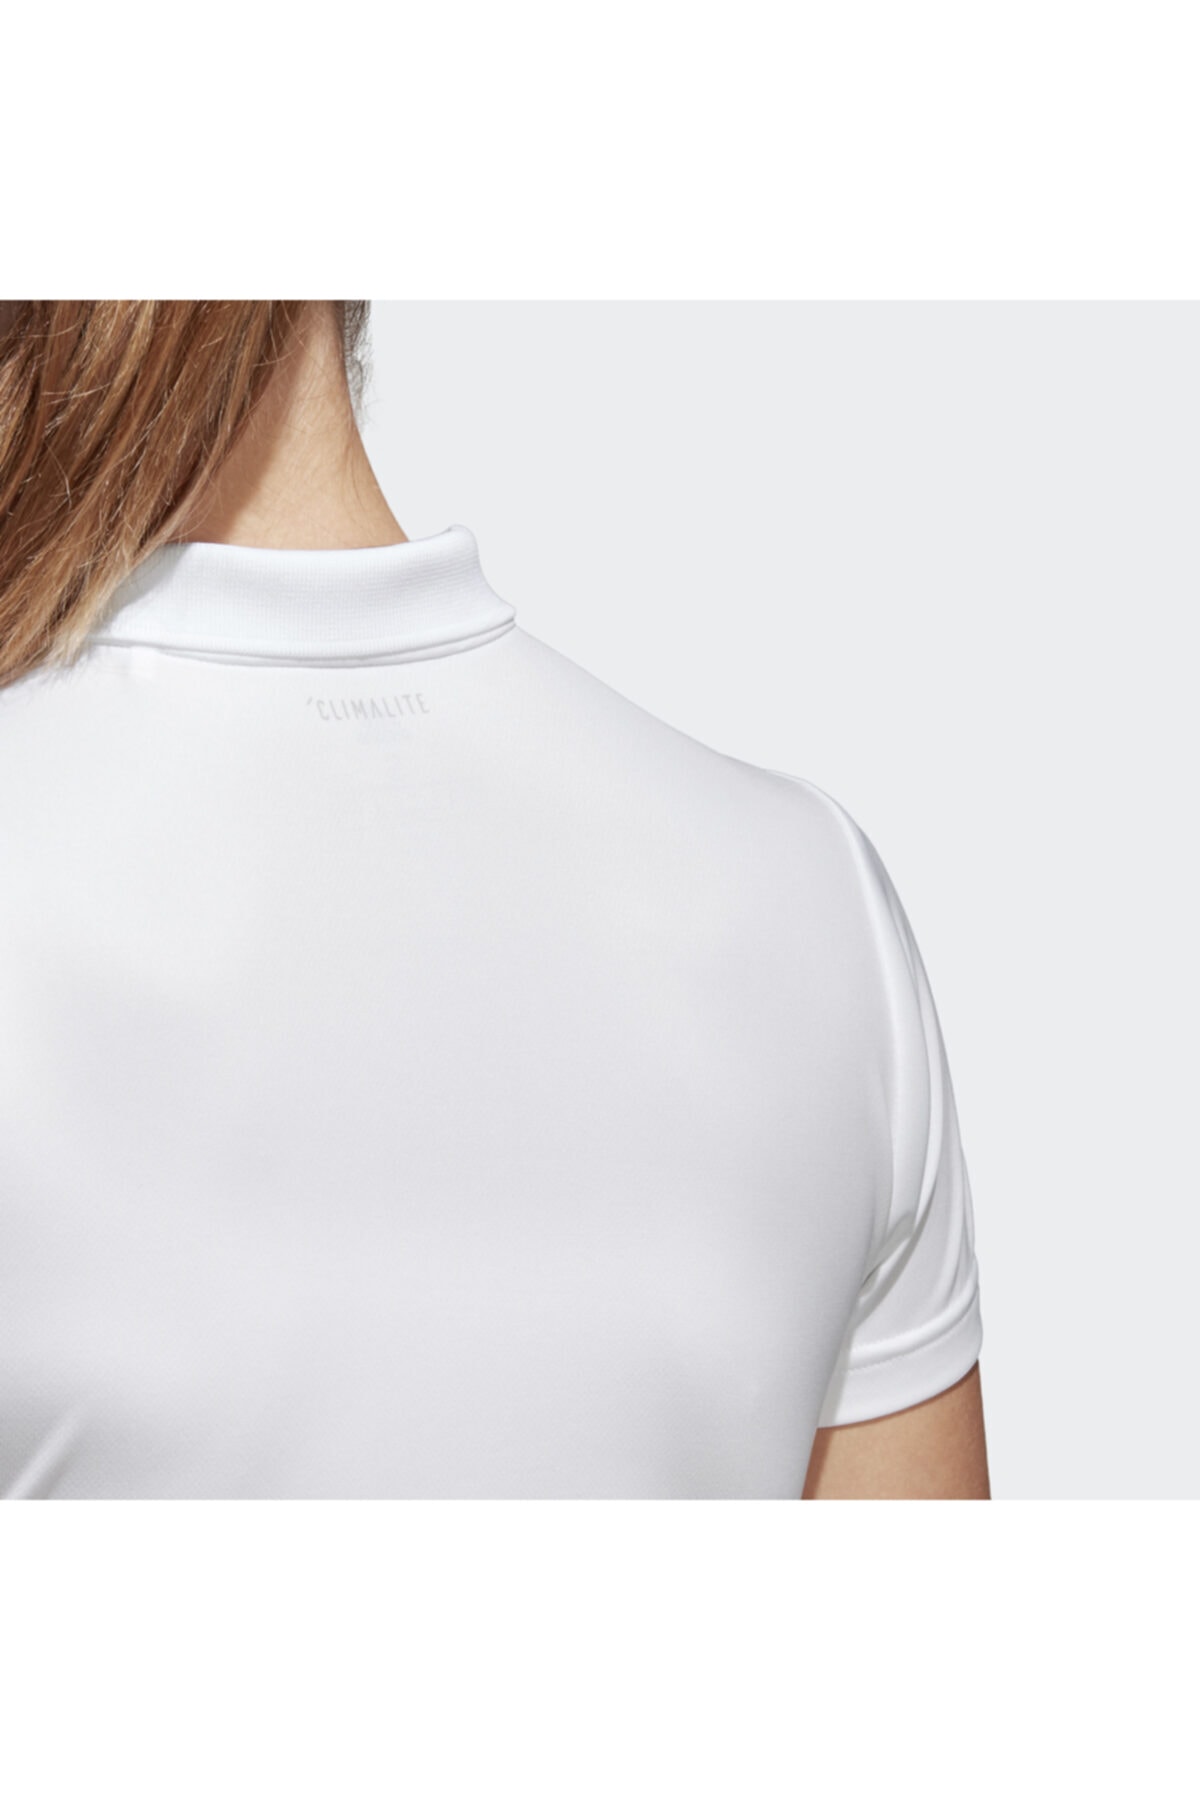 adidas CLUB POLO Beyaz Kadın T-Shirt 100351620